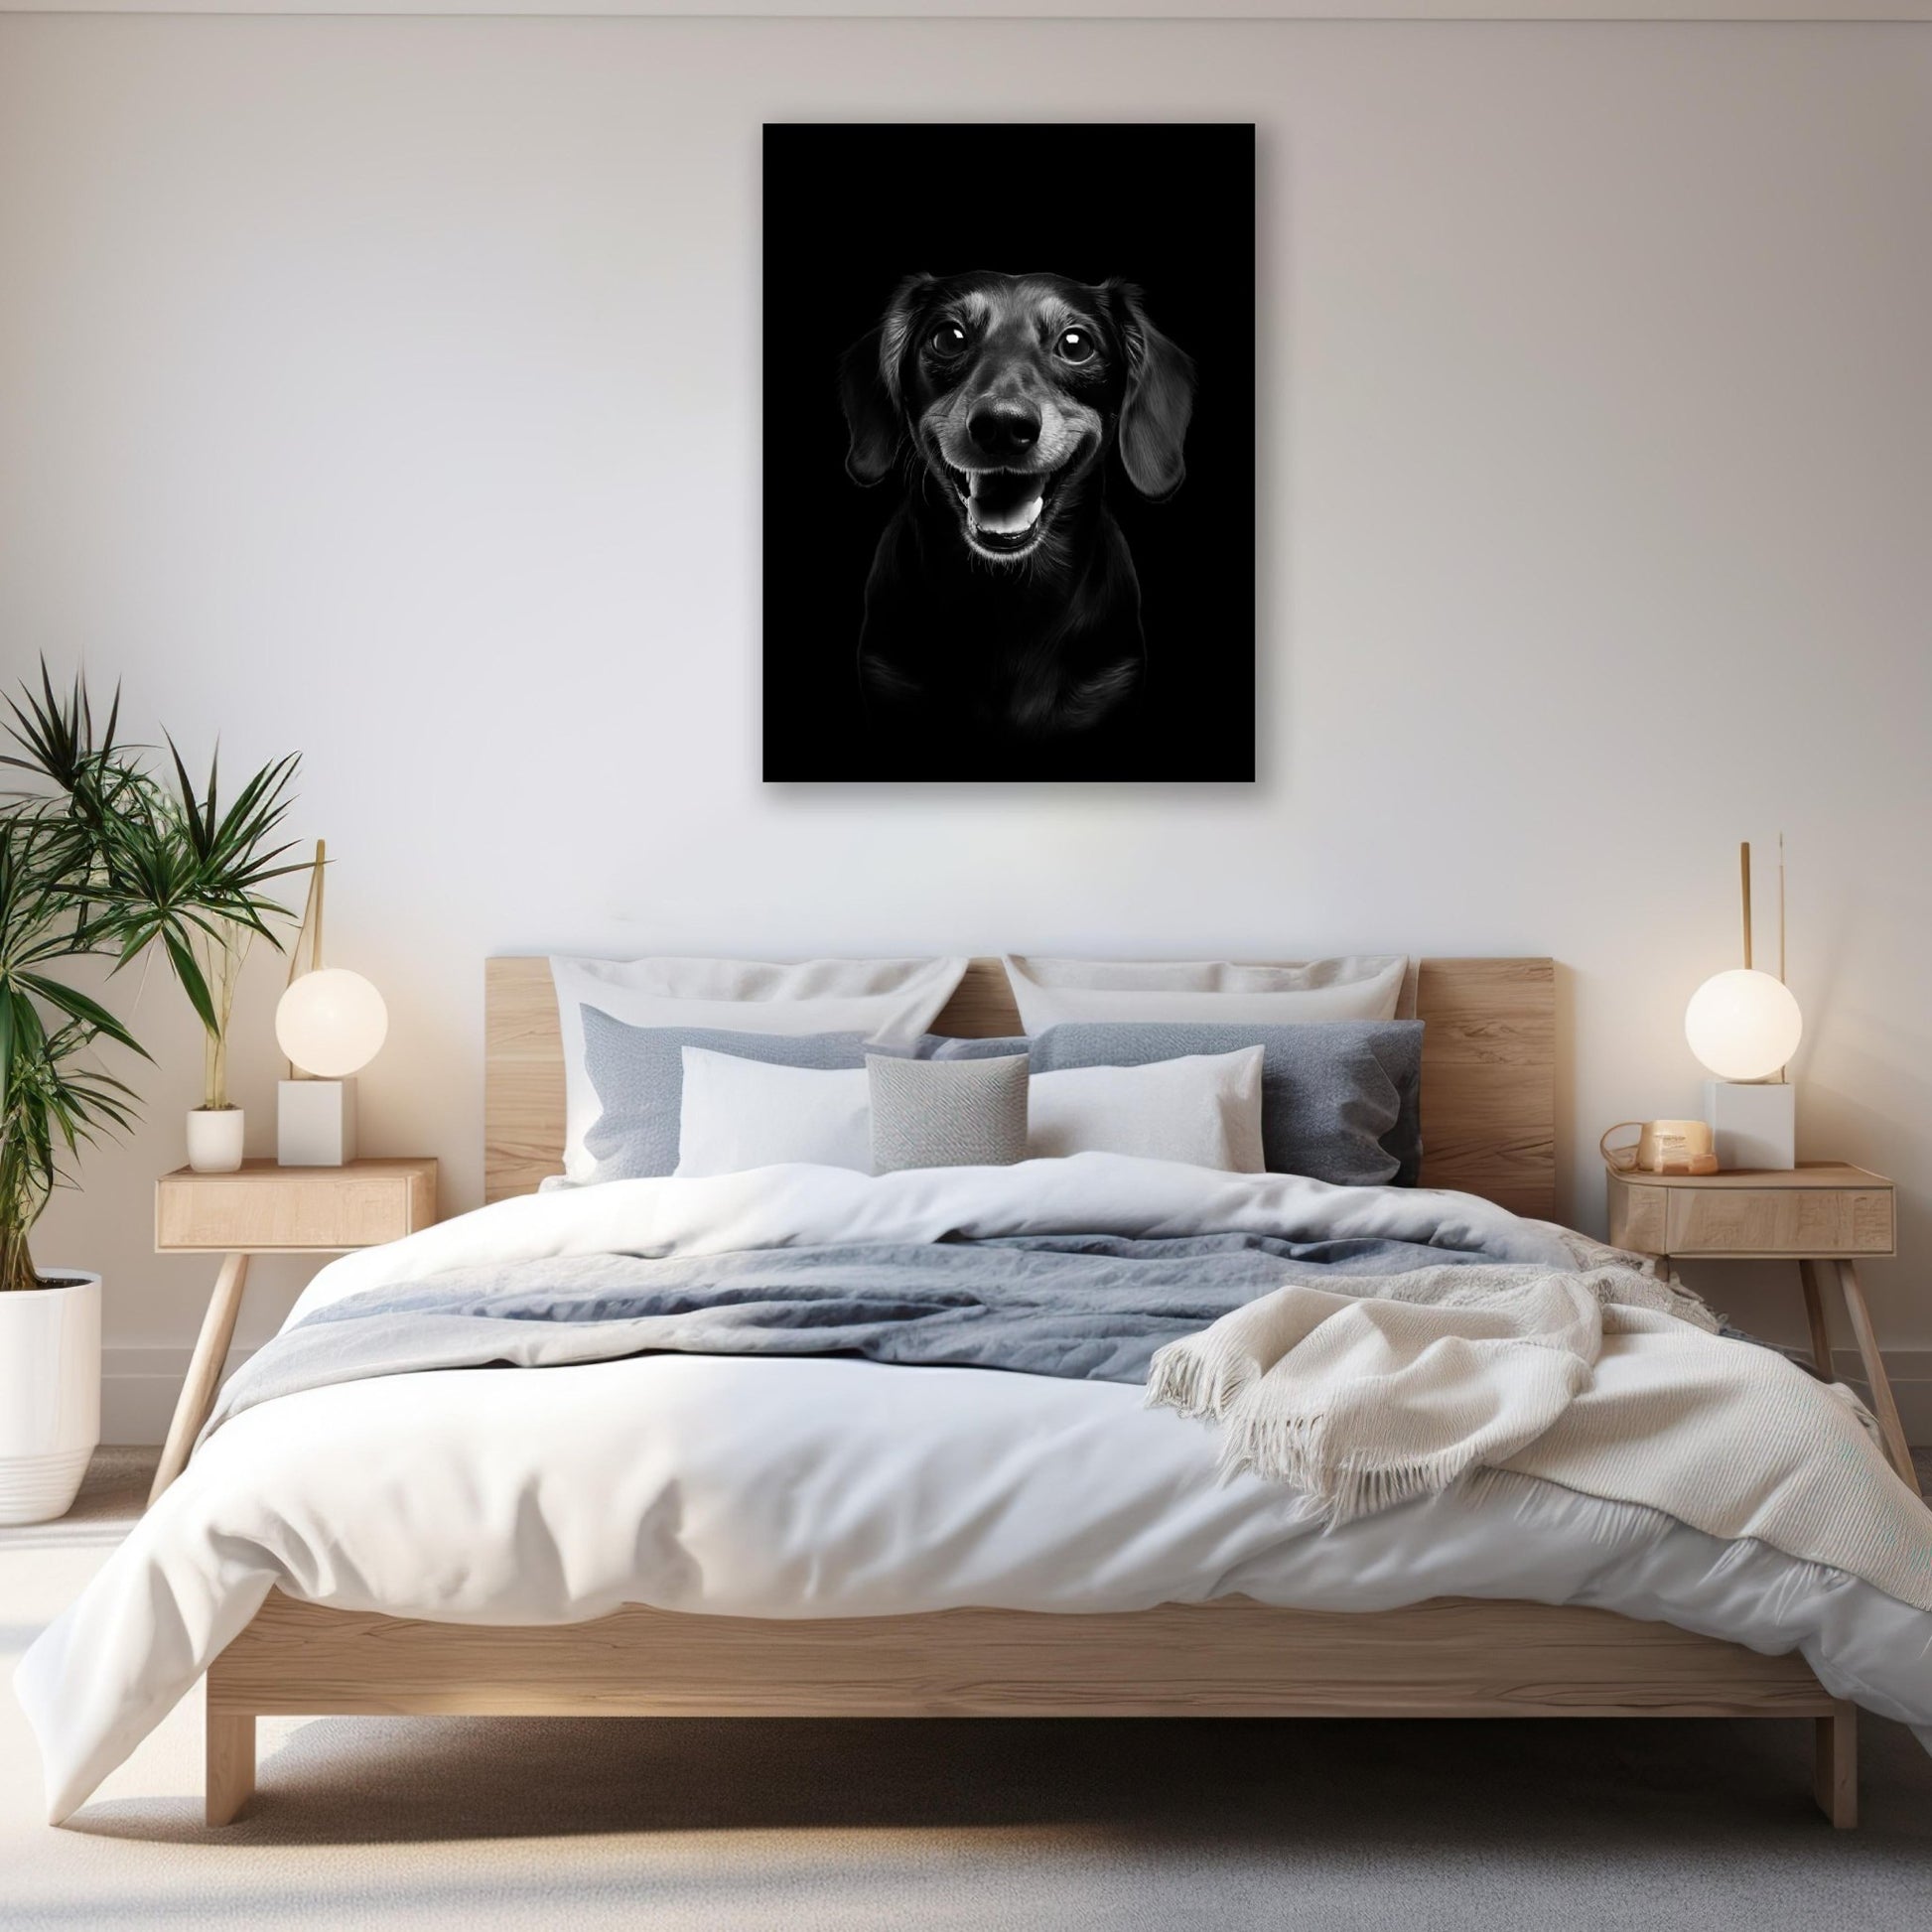 Dog - Dachshund Portrait - Atka Inspirations